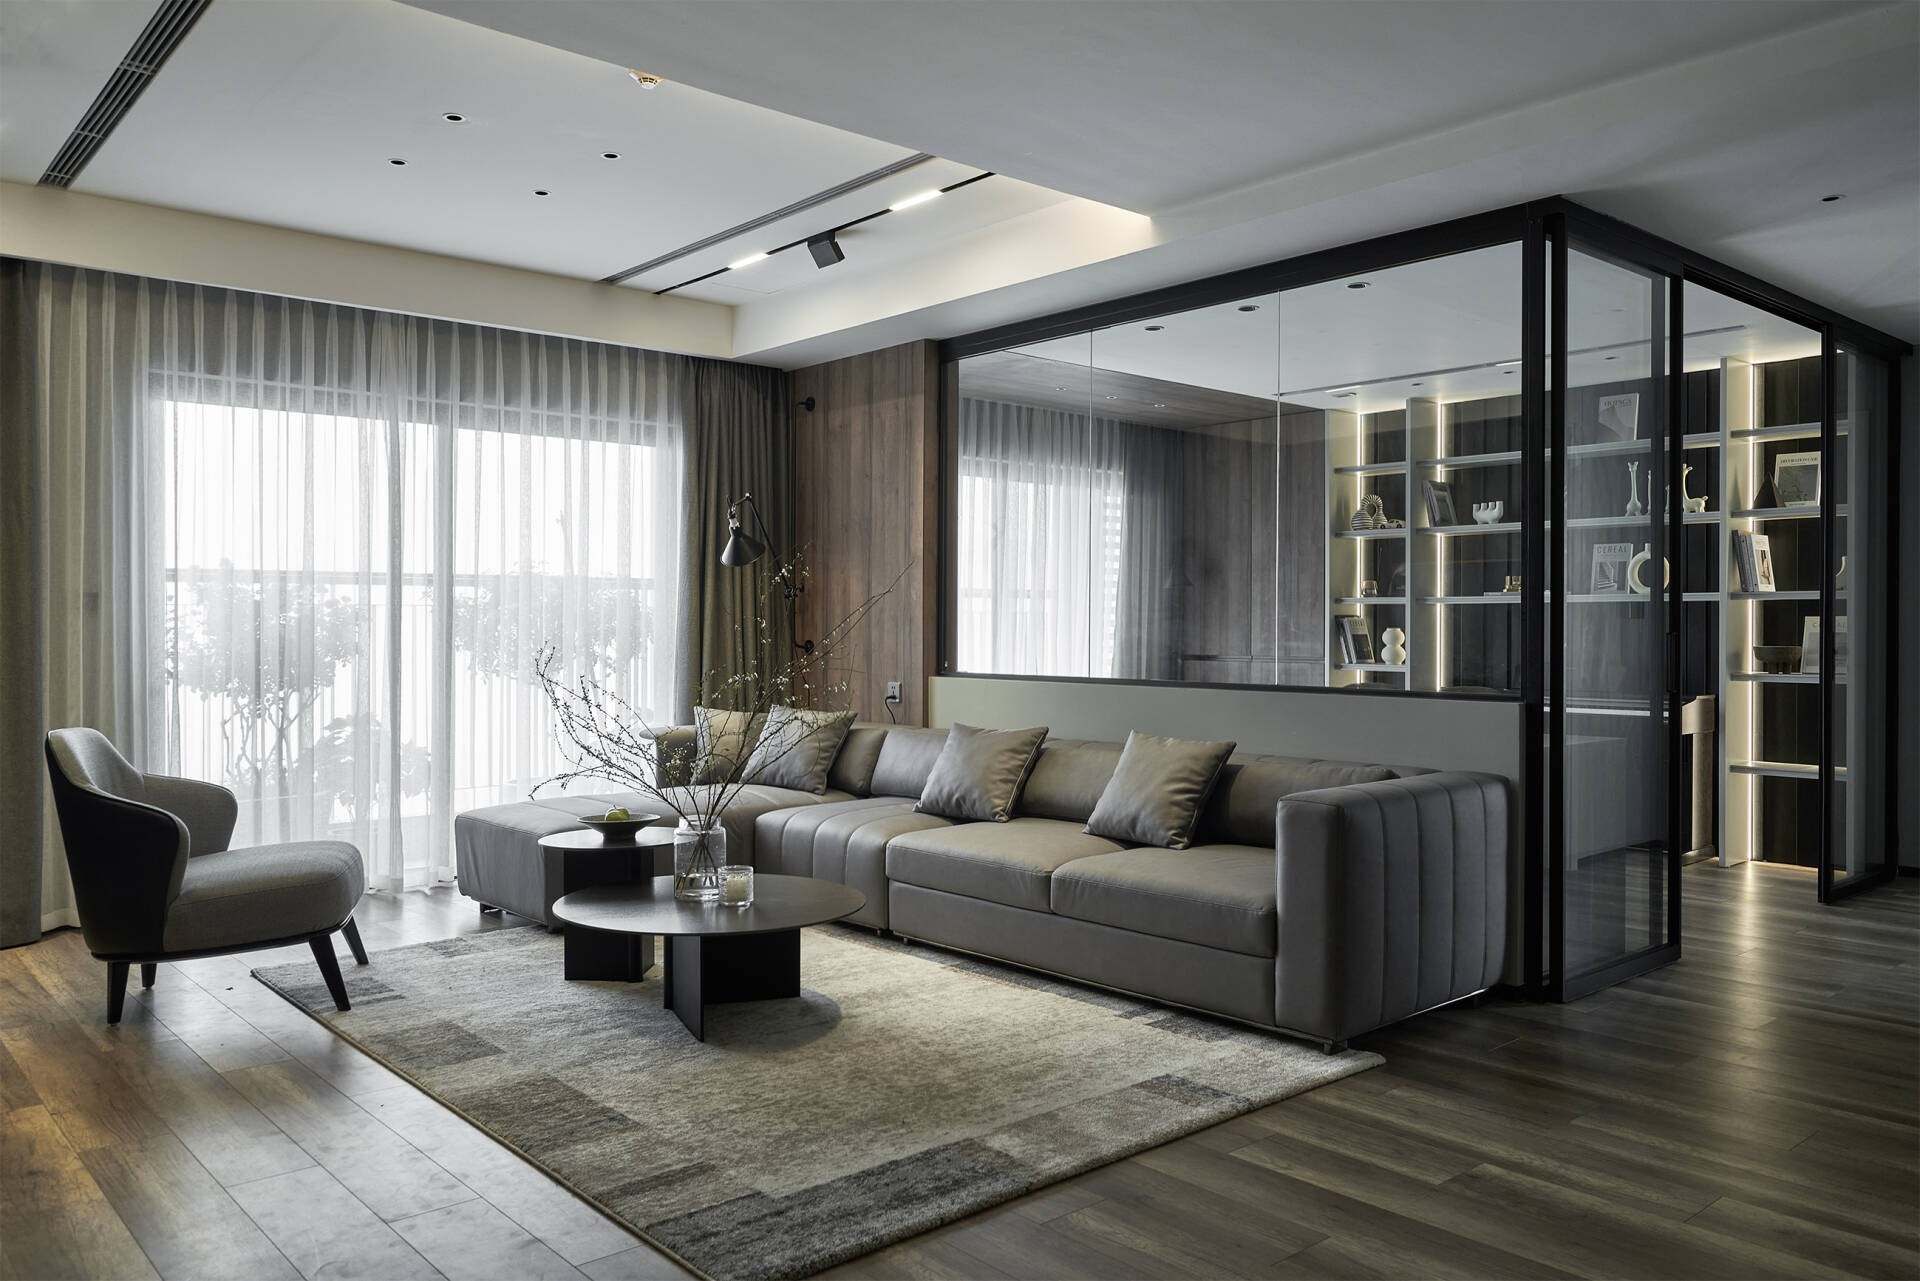 
Nội thất căn hộ kết hợp các sắc độ đậm nhạt của màu xám, tạo nên một không gian sống rộng 140m2 không gian hiện đại, ấm áp
